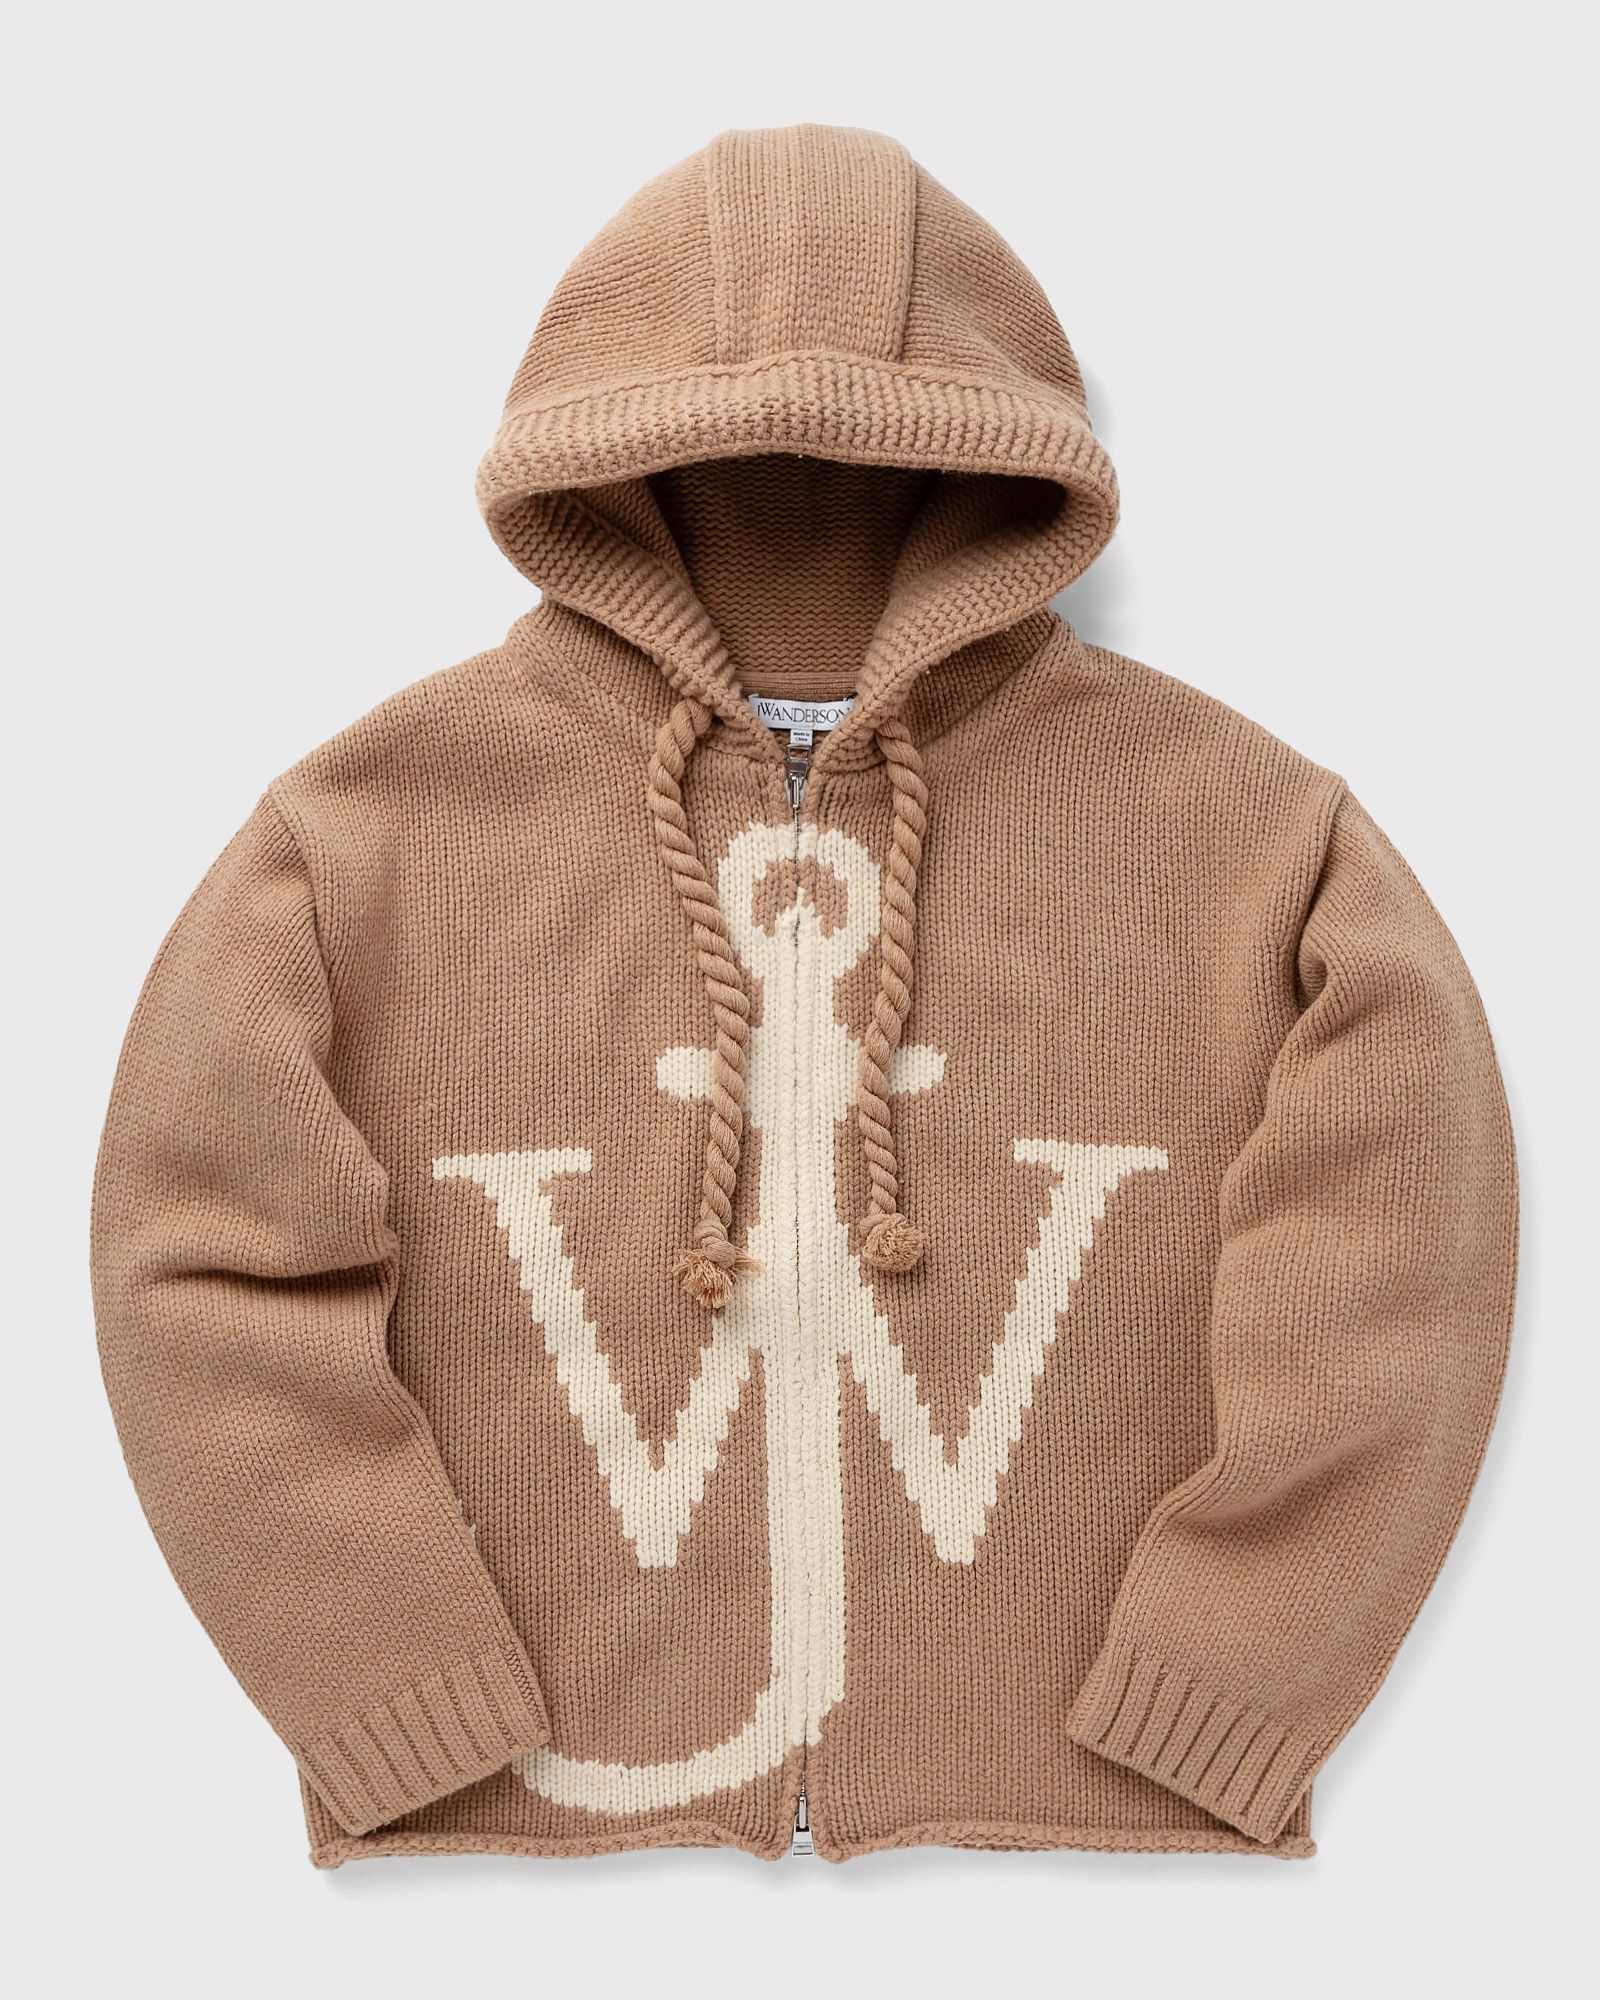 JW Anderson - zip front anchor hoodie men pullovers brown in größe:m